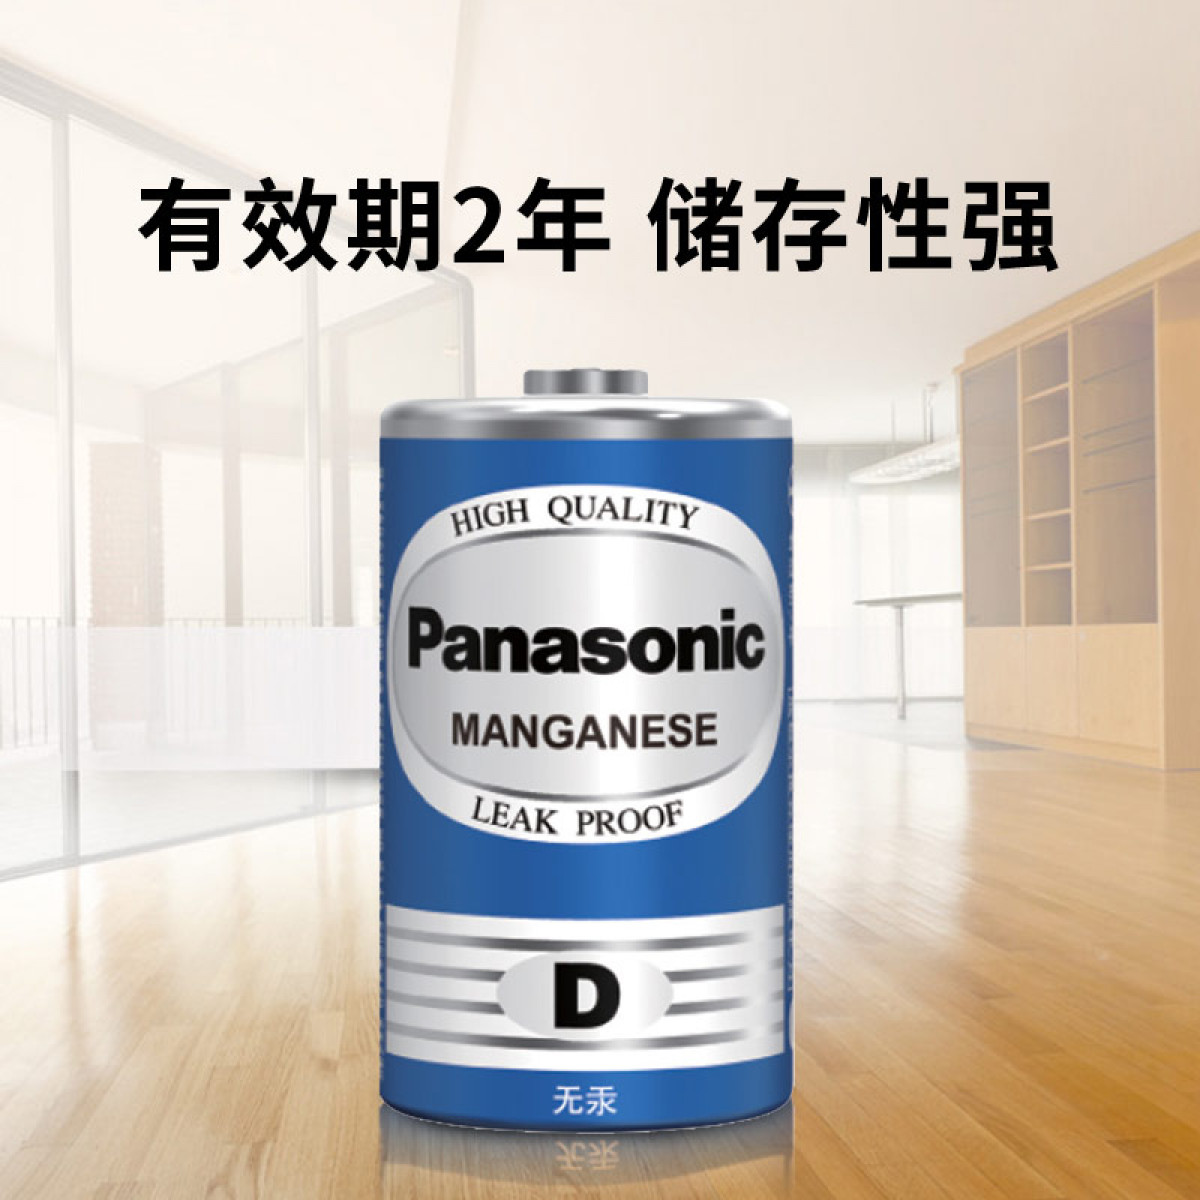 松下（Panasonic）碳性1号大号D型干电池R20适用于热水器煤气燃气灶手电筒R20NU/4SC 4粒